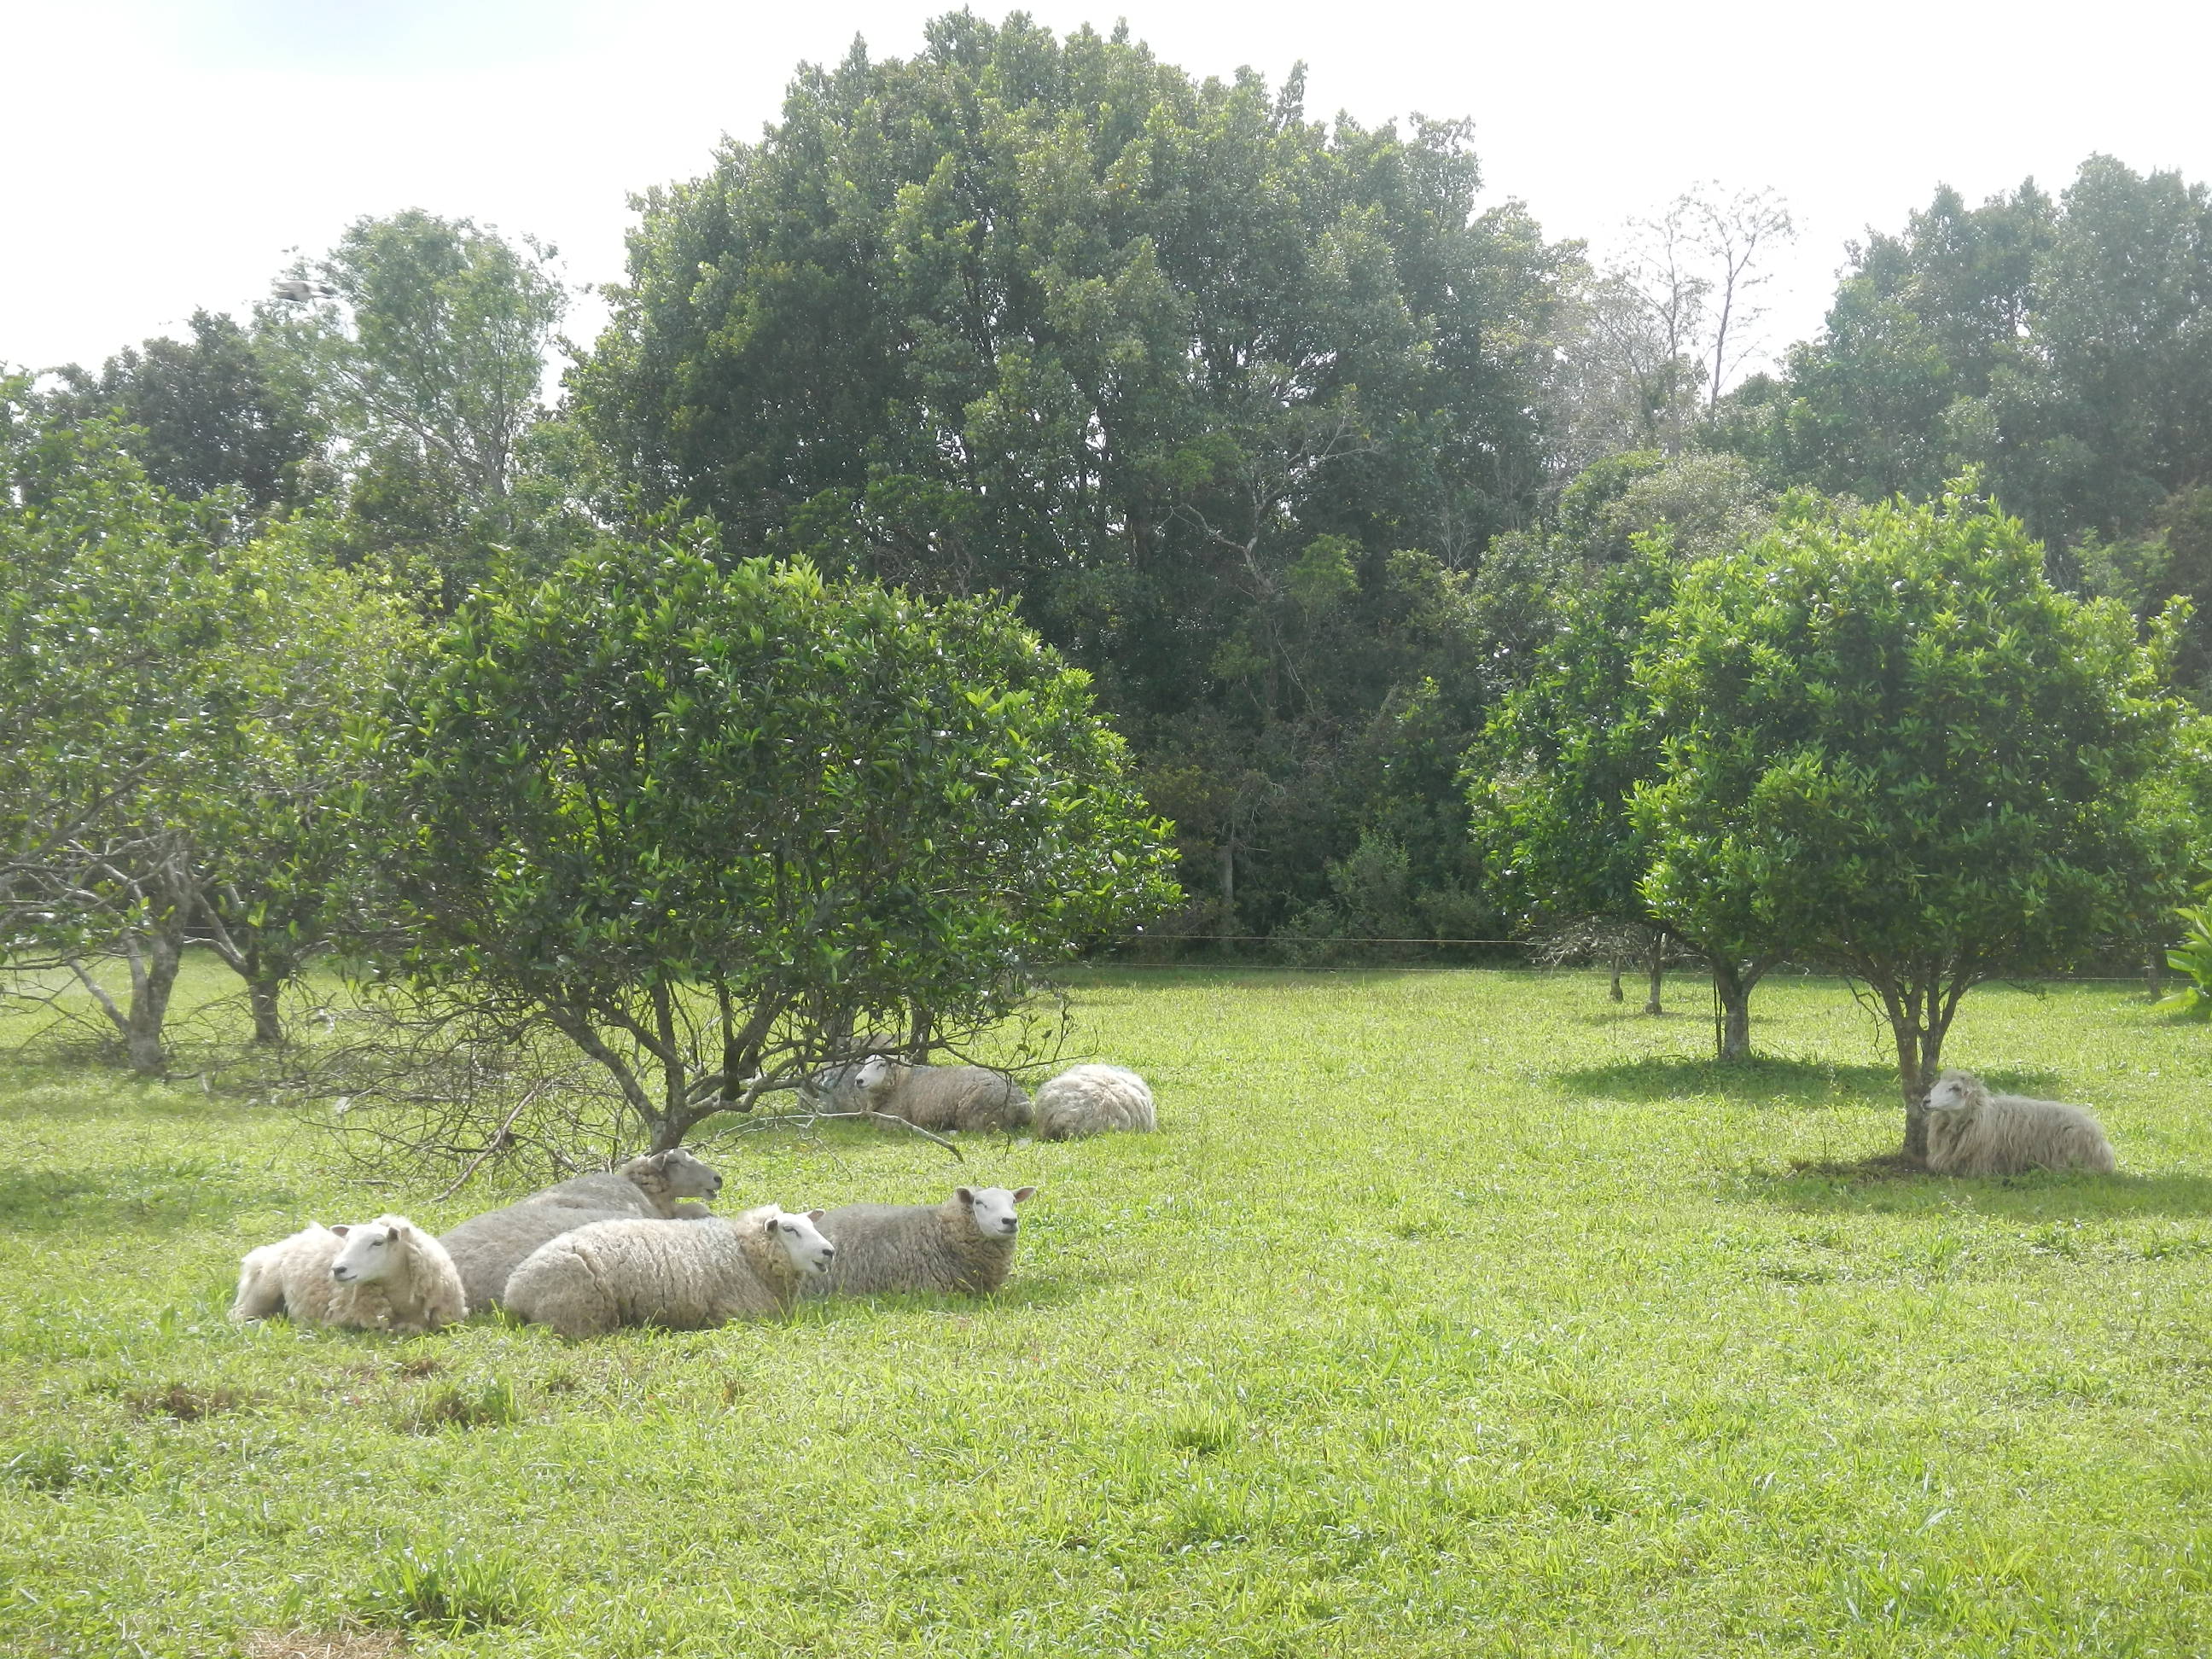 20141003 Fazenda Fruticultura Pomar Ovinocultura Ovelhas pastando sob árvores.jpg